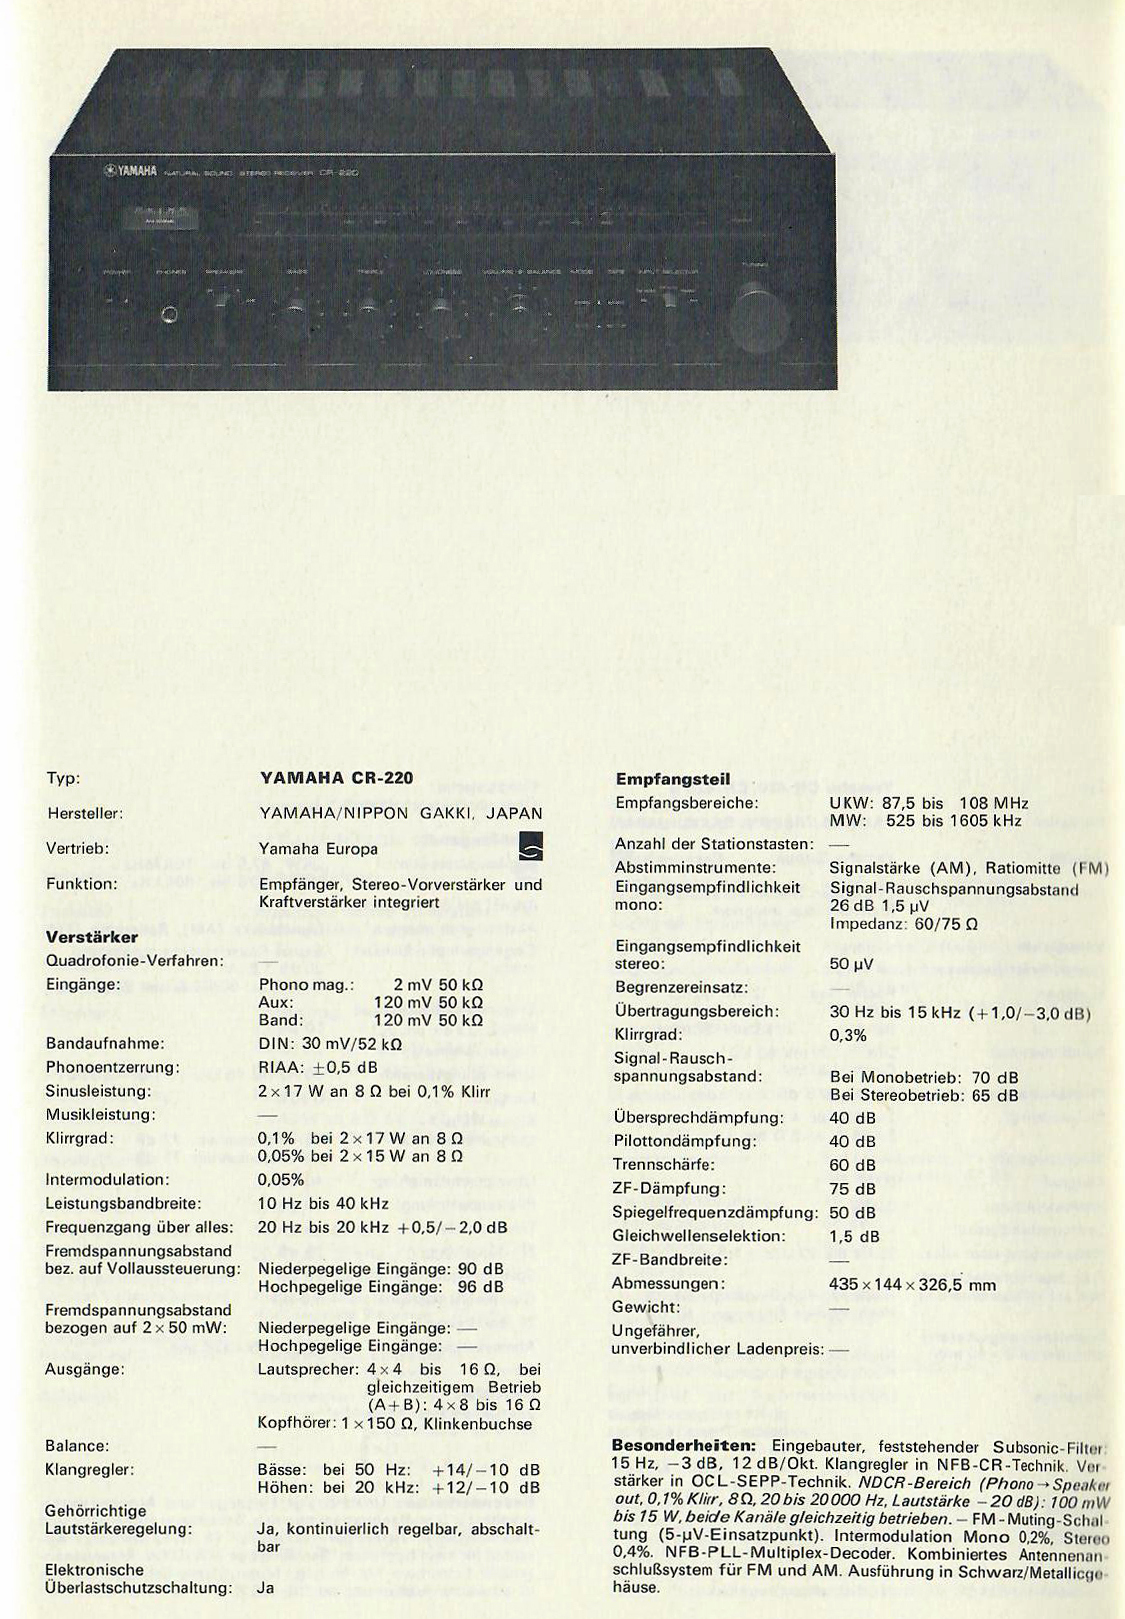 Yamaha CR-220-Daten.jpg